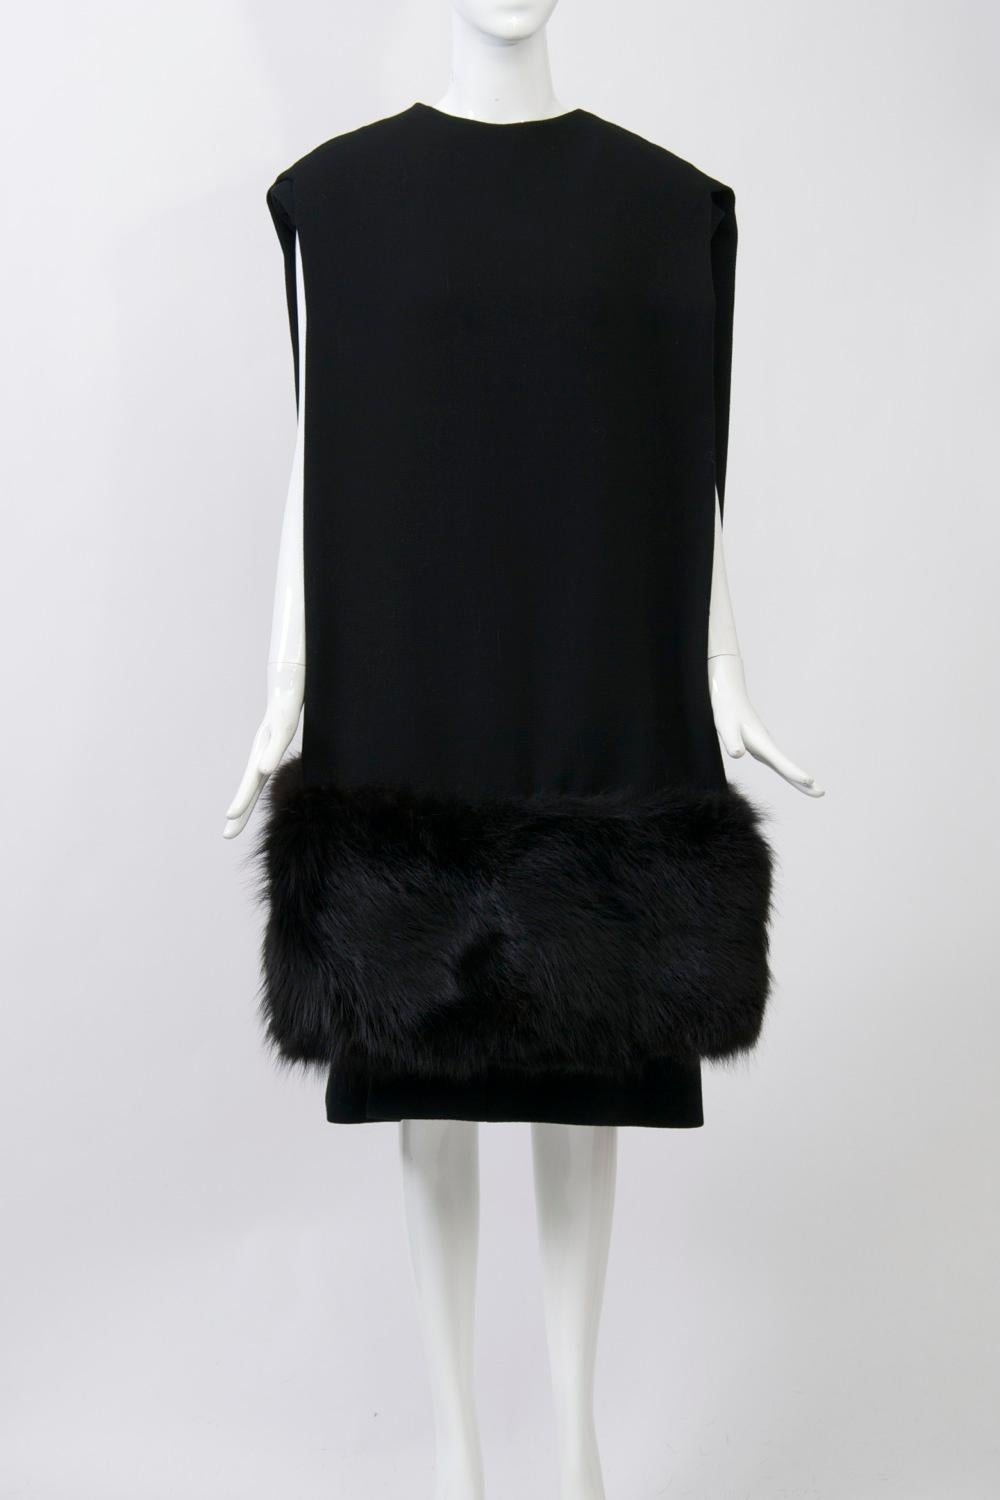 Superbe ensemble Pauline Trigère des années 1970 en crêpe de laine noir, la robe simple sous une cape/chapeau inversée inhabituelle se terminant par une bordure de renard noir profond aux ourlets. La cape peut être portée avec l'ouverture à